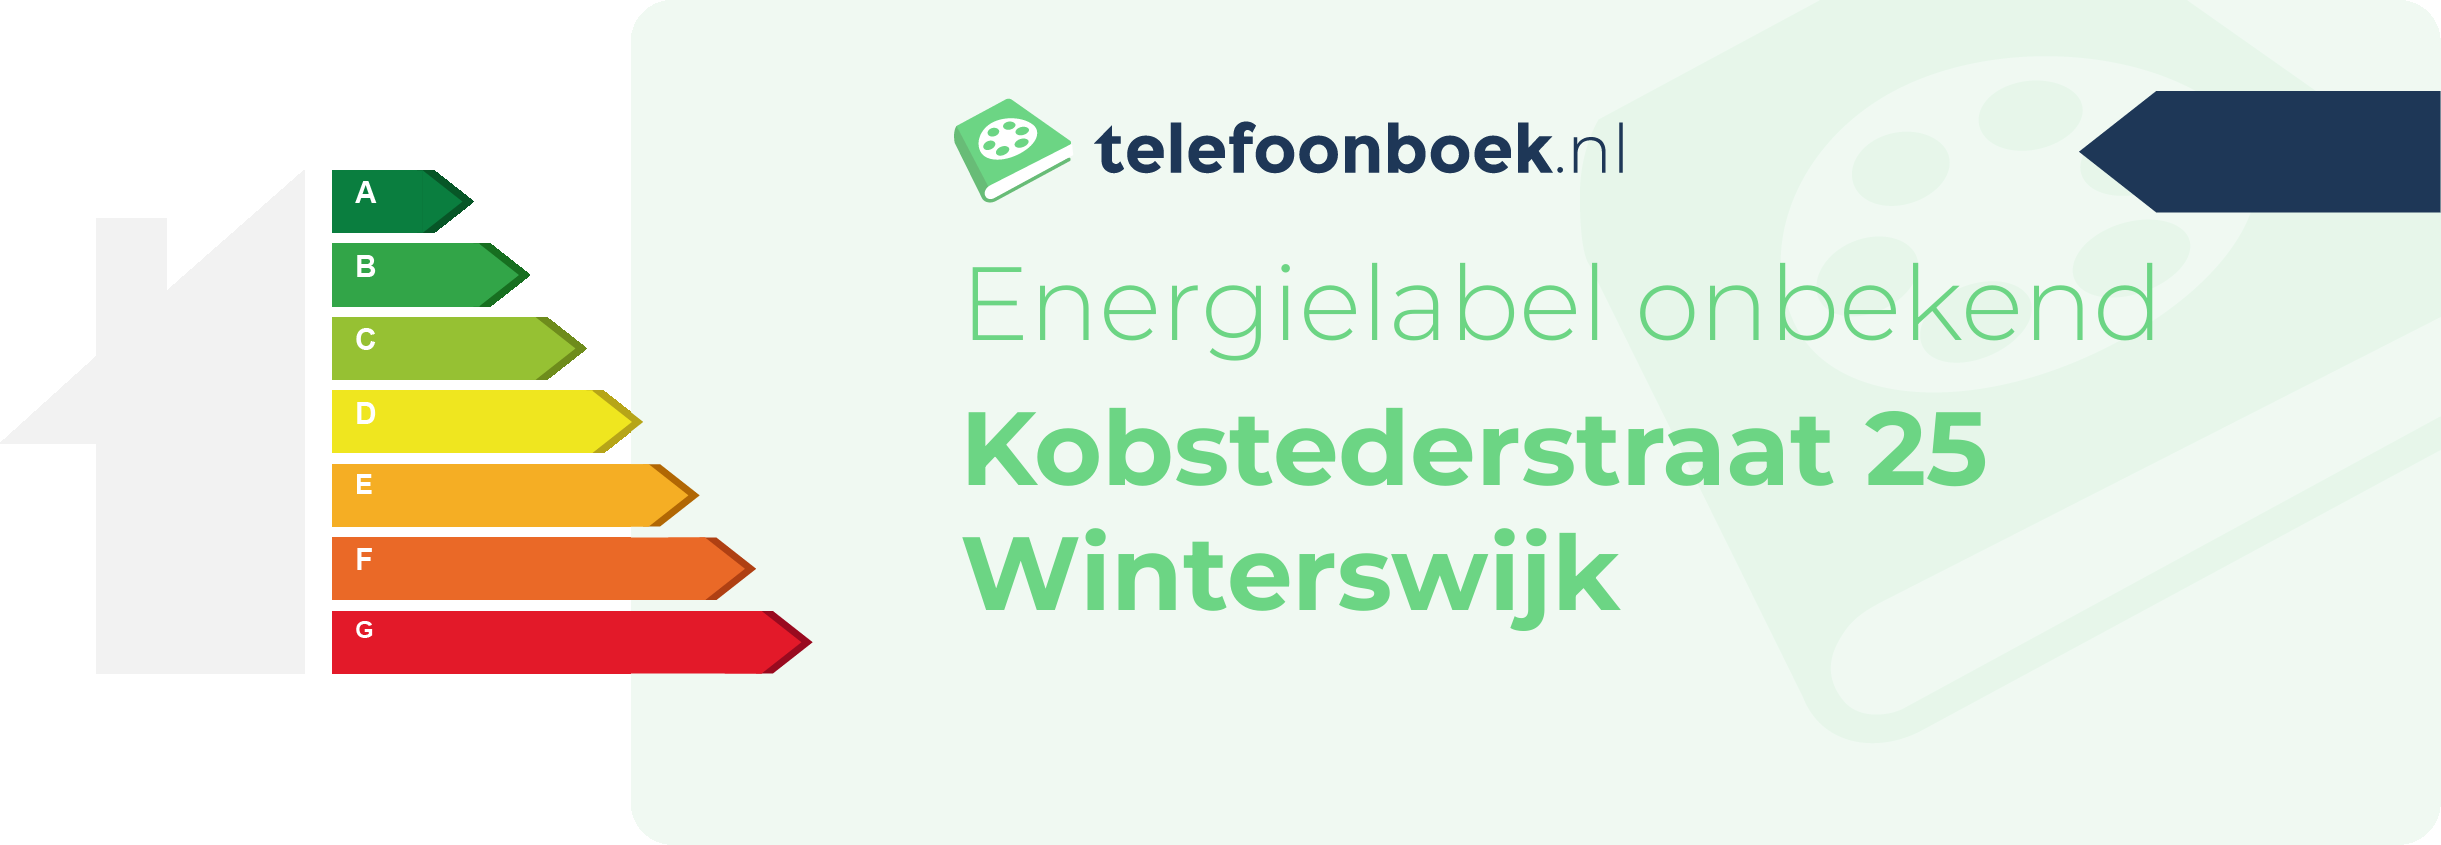 Energielabel Kobstederstraat 25 Winterswijk